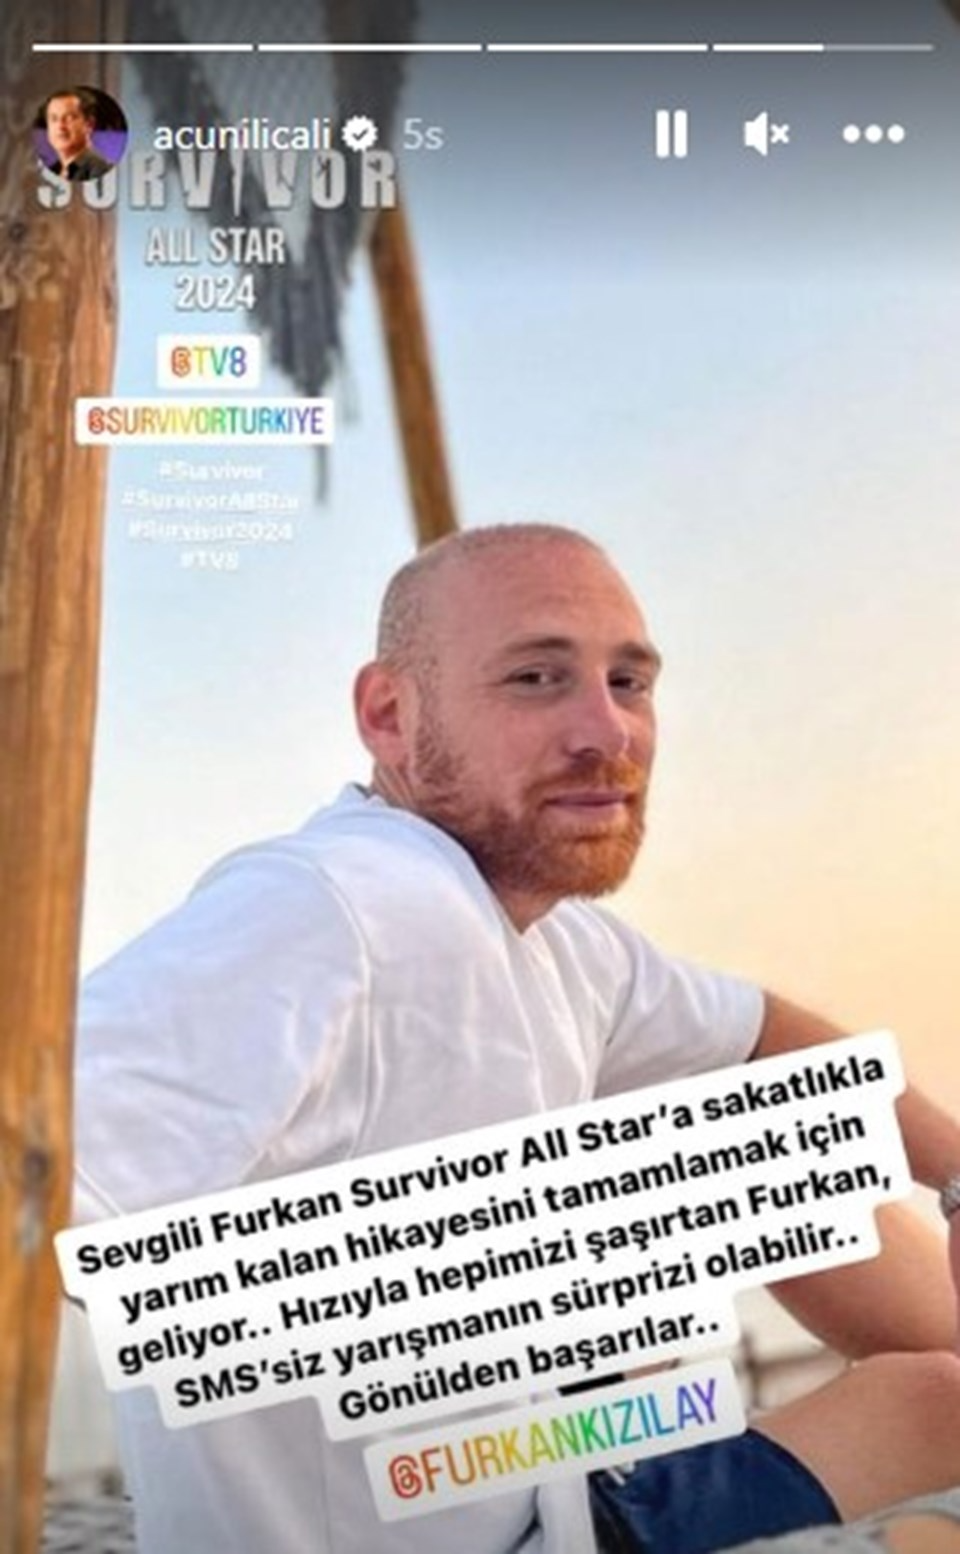 Acun Ilıcalı duyurdu: Furkan Kızılay, Survivor All Star kadrosunda - Sayfa 2